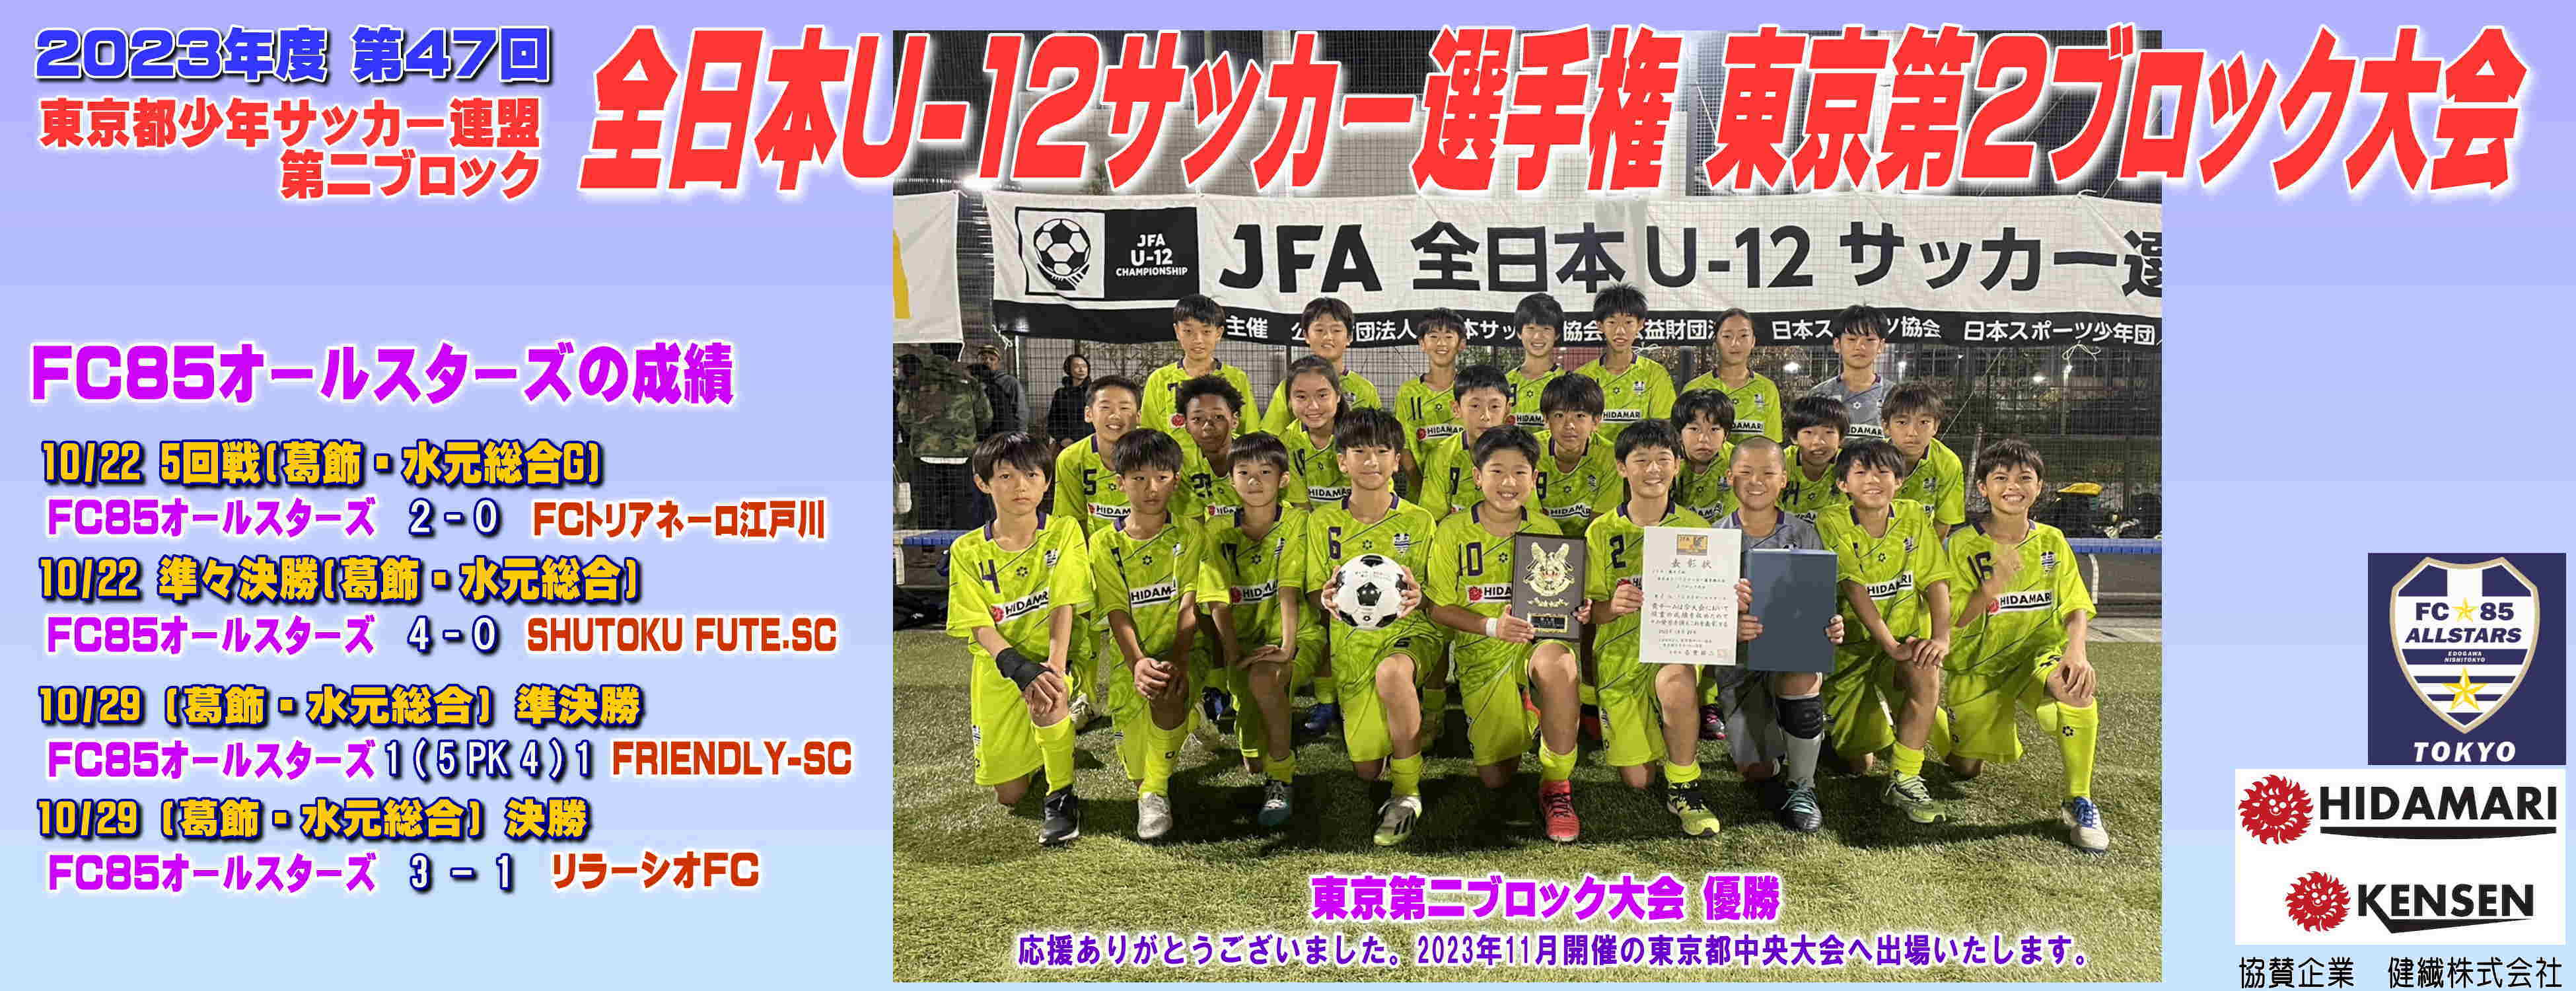 全日本U-12選手権 東京2B大会(6年生) 優勝